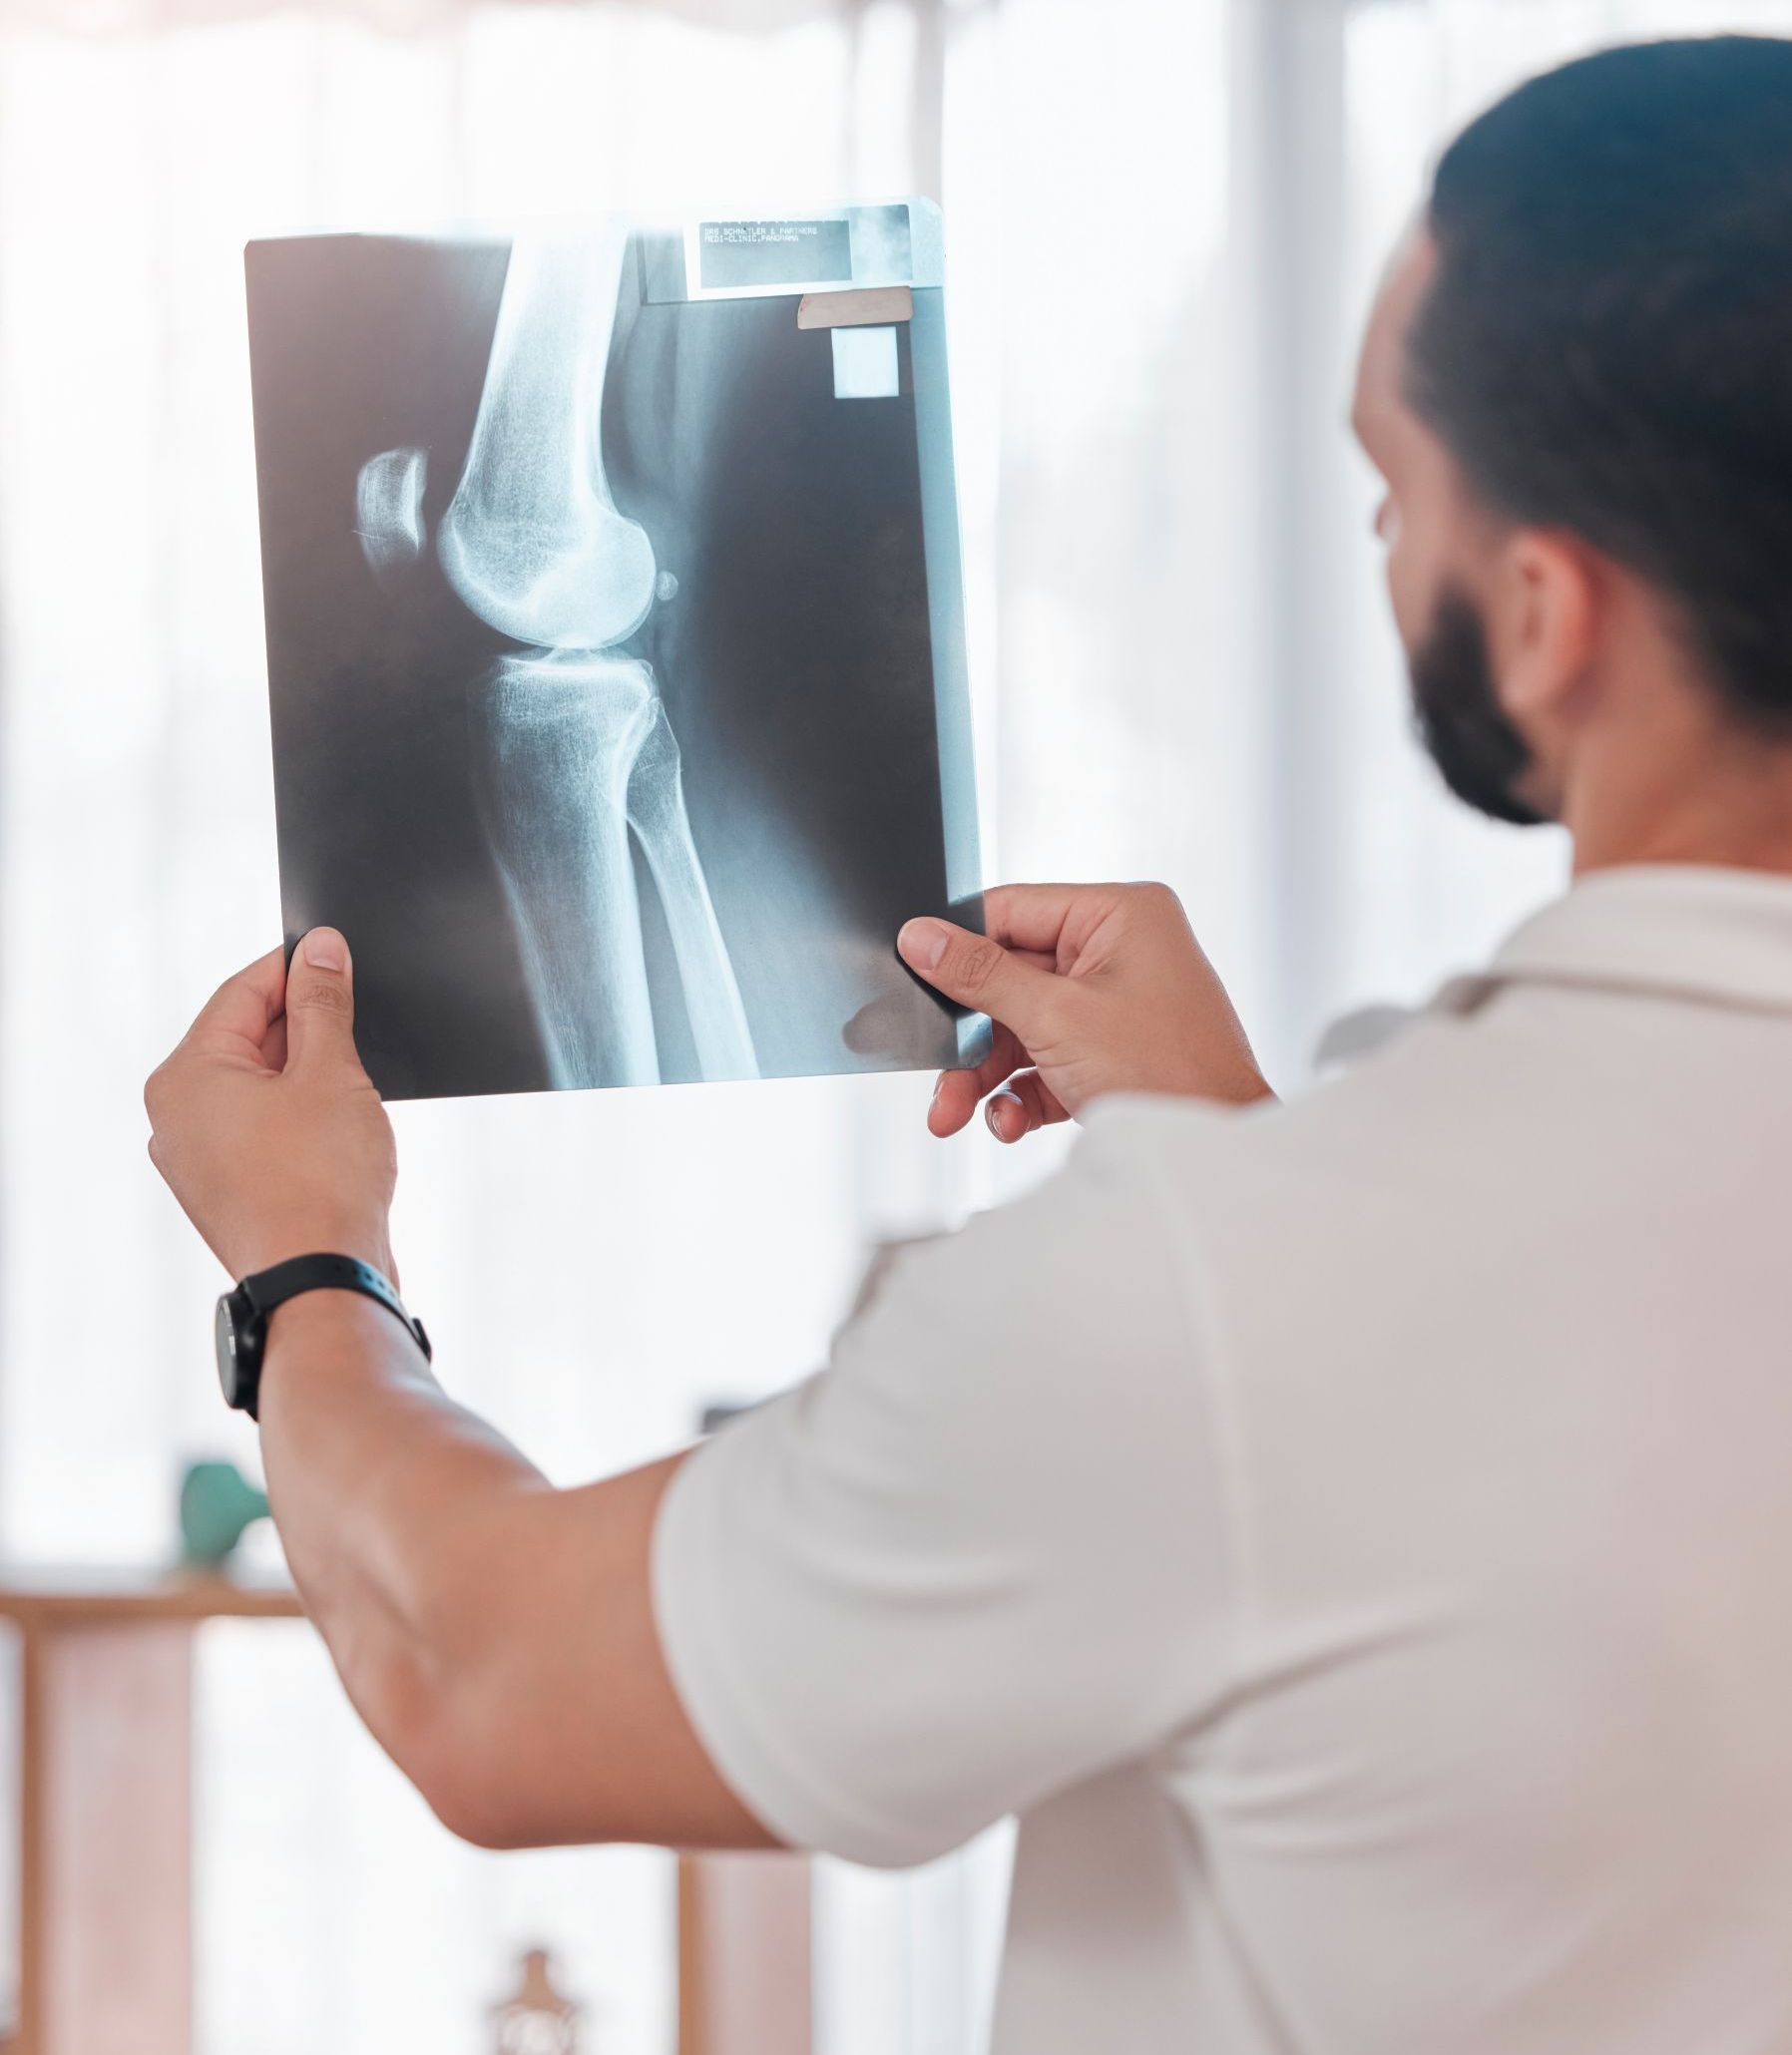 Arzt betrachtet Röntgenbild eines Knies